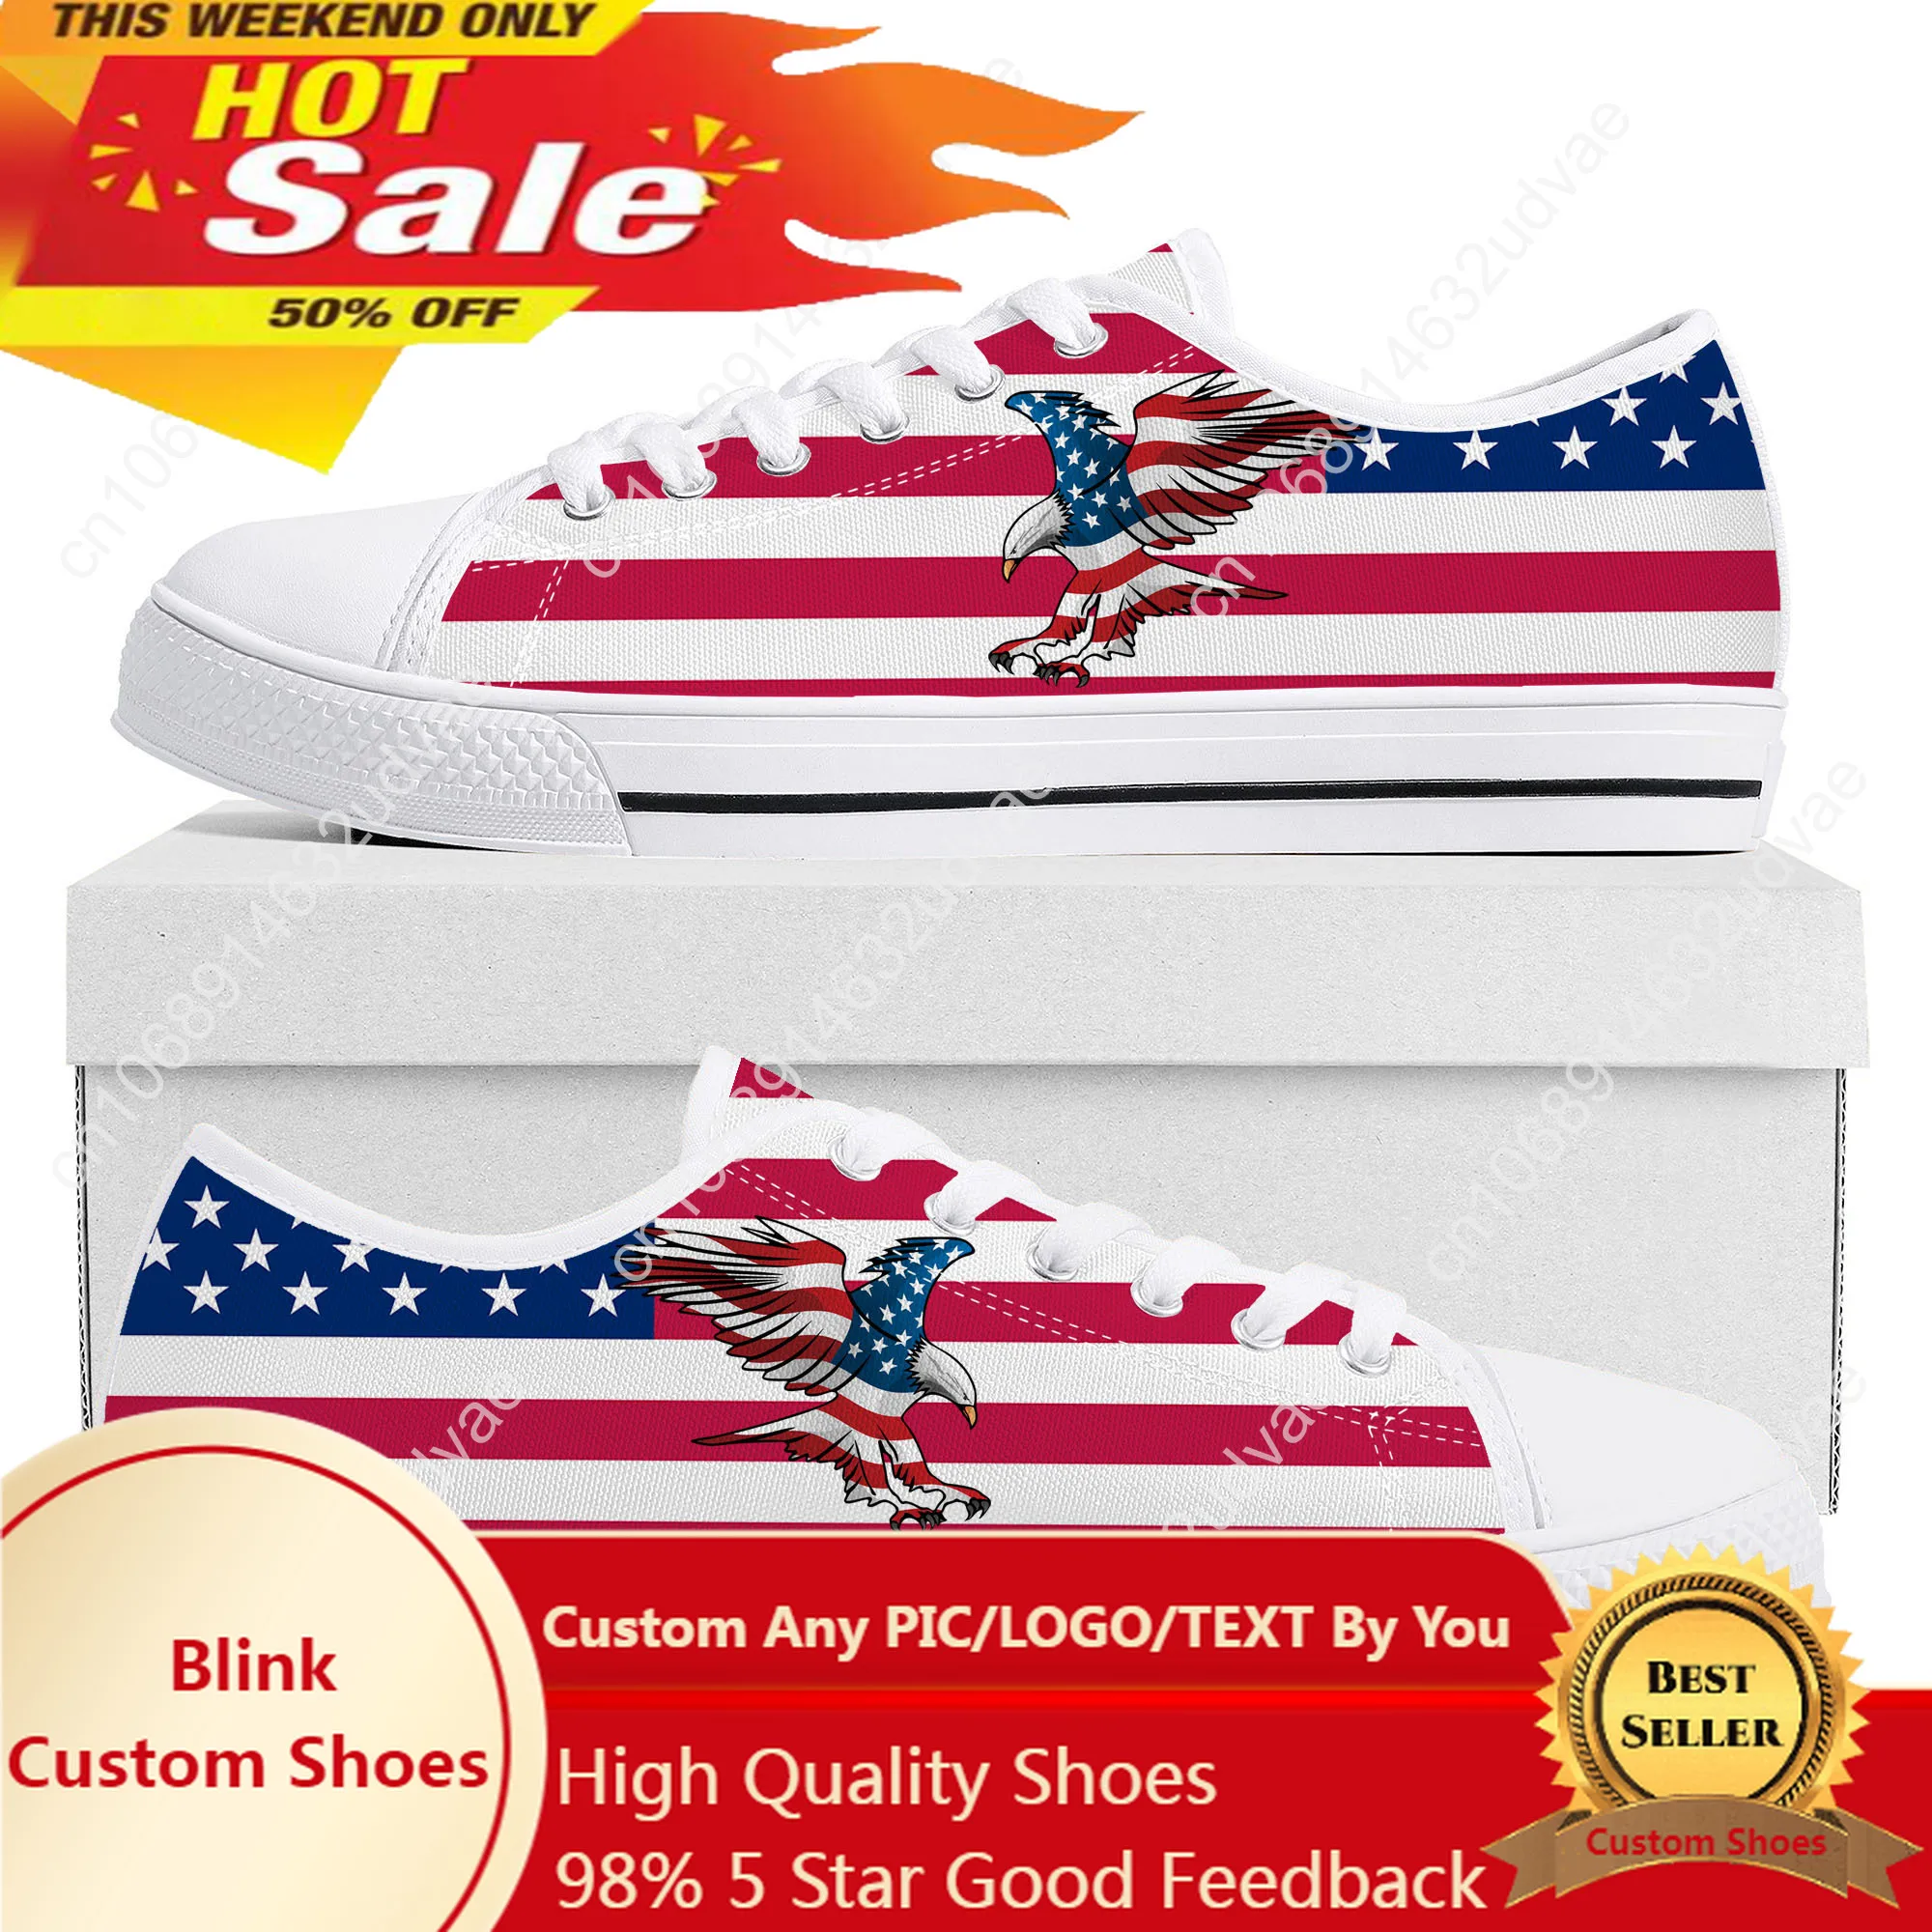 

Кроссовки мужские/женские парусиновые, низкие кеды с американским флагом, повседневная обувь под заказ для подростков, цвета: красный, синий, белый